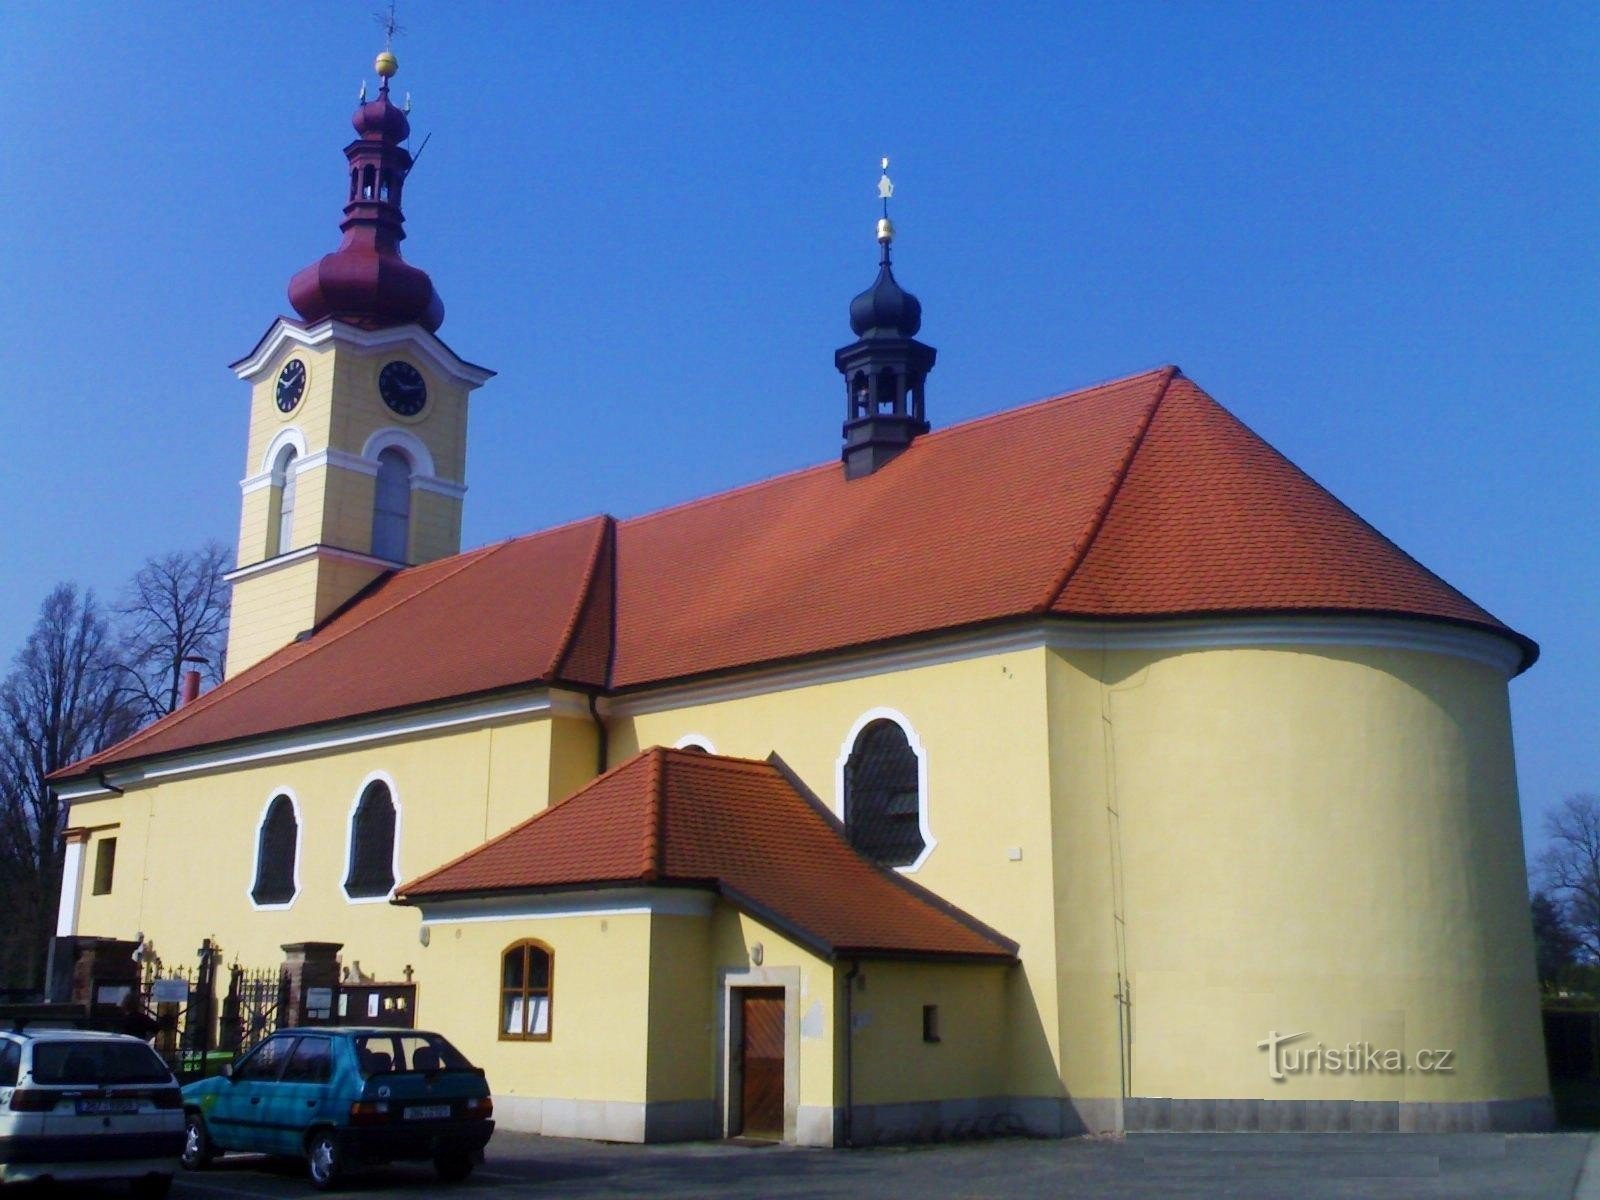 Pouchov - Pyhän kirkko Paul